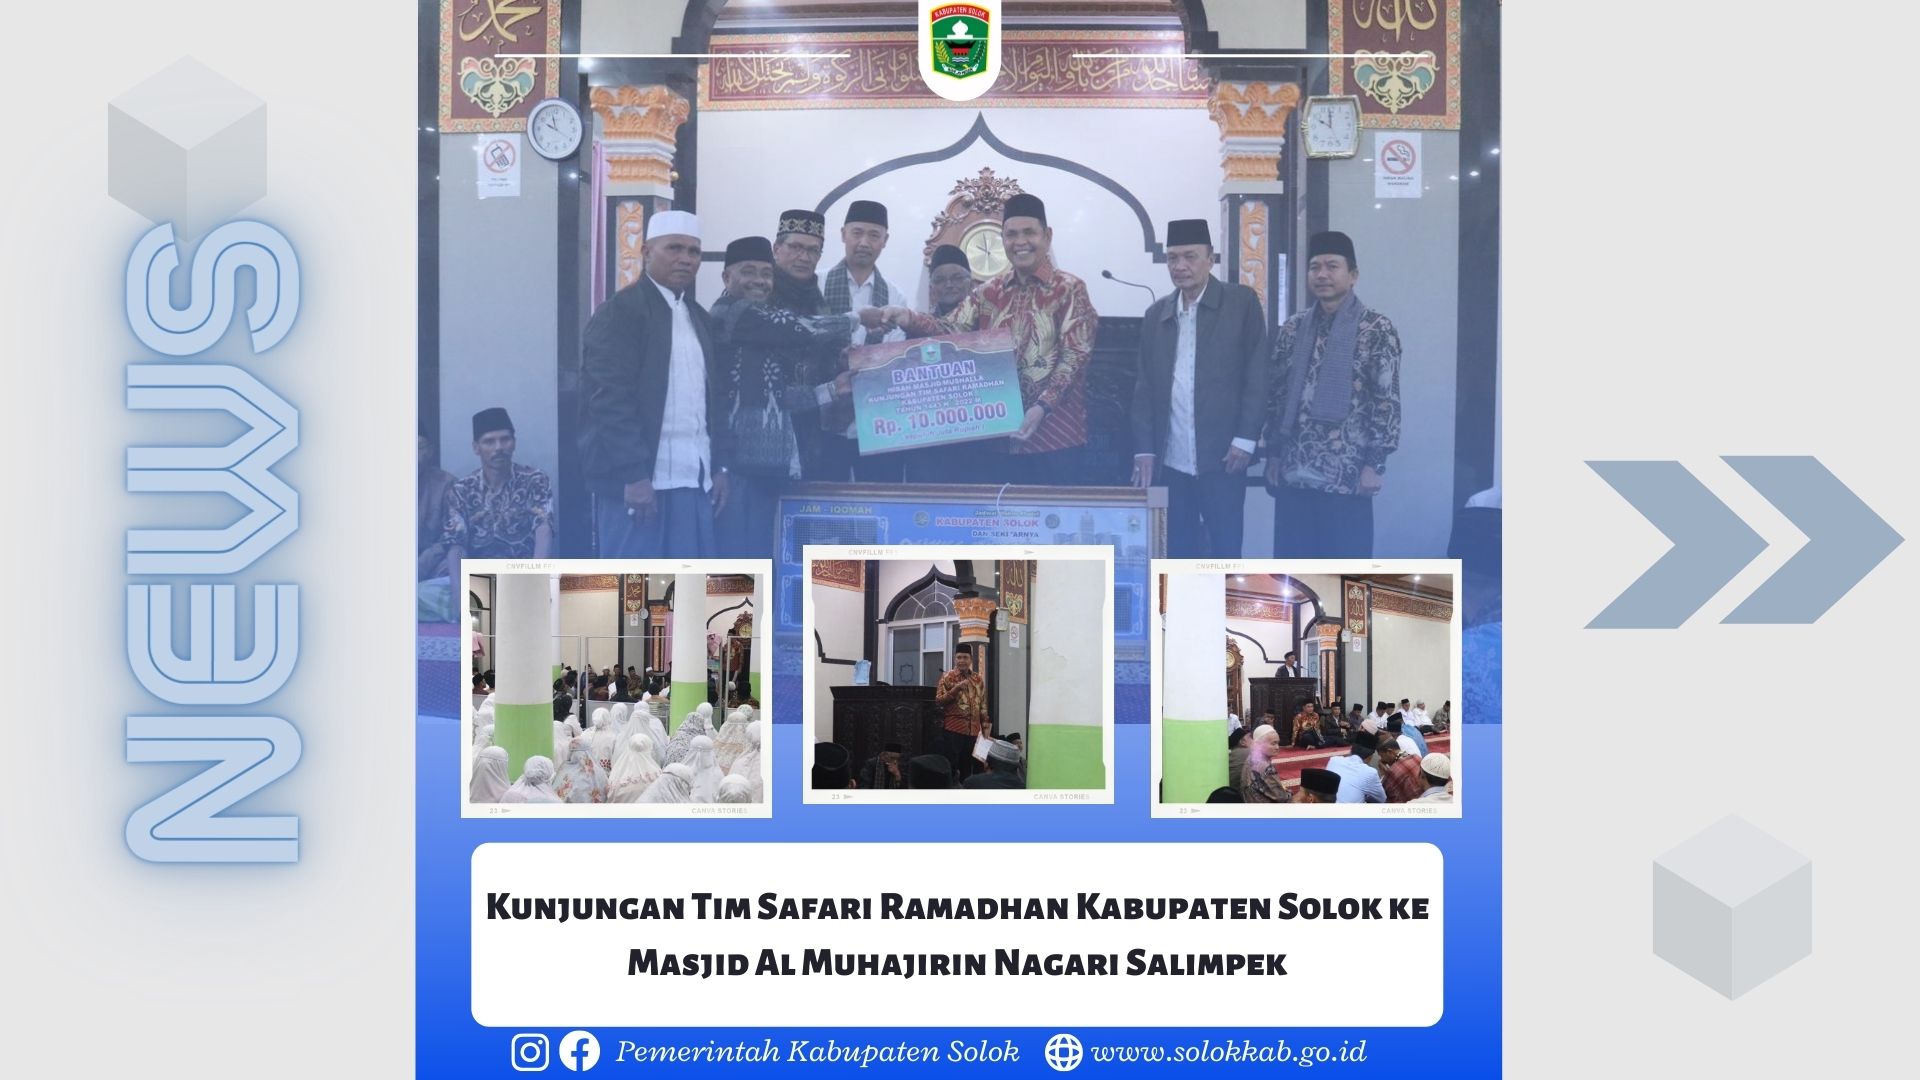 Kunjungan Tim Safari Ramadhan Kabupaten Solok ke Masjid Al Muhajirin Nagari Salimpek